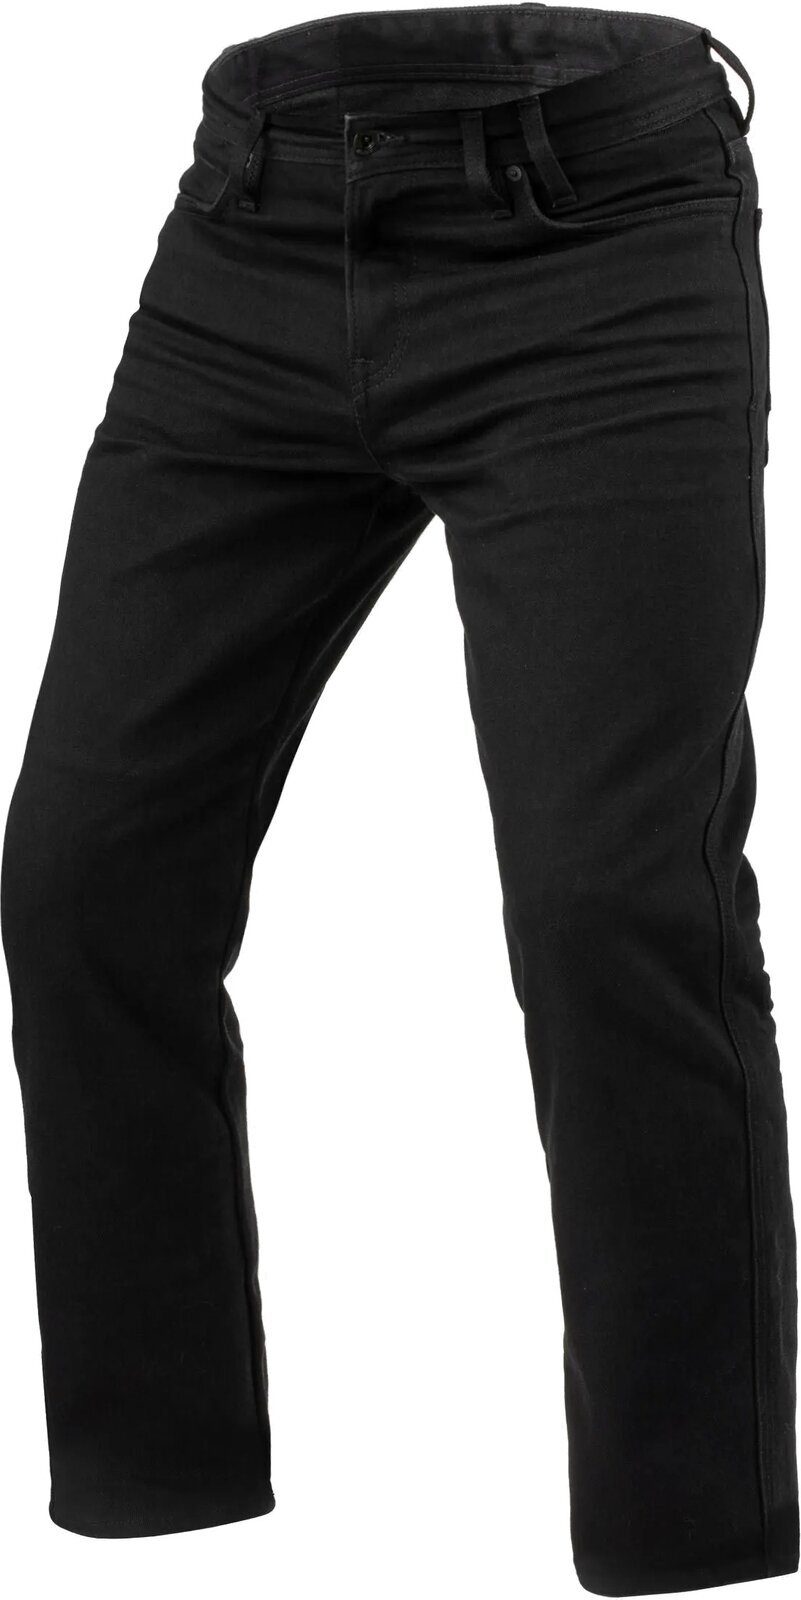 Motoristične jeans hlače Rev'it! Jeans Lombard 3 RF Black 32/31 Motoristične jeans hlače